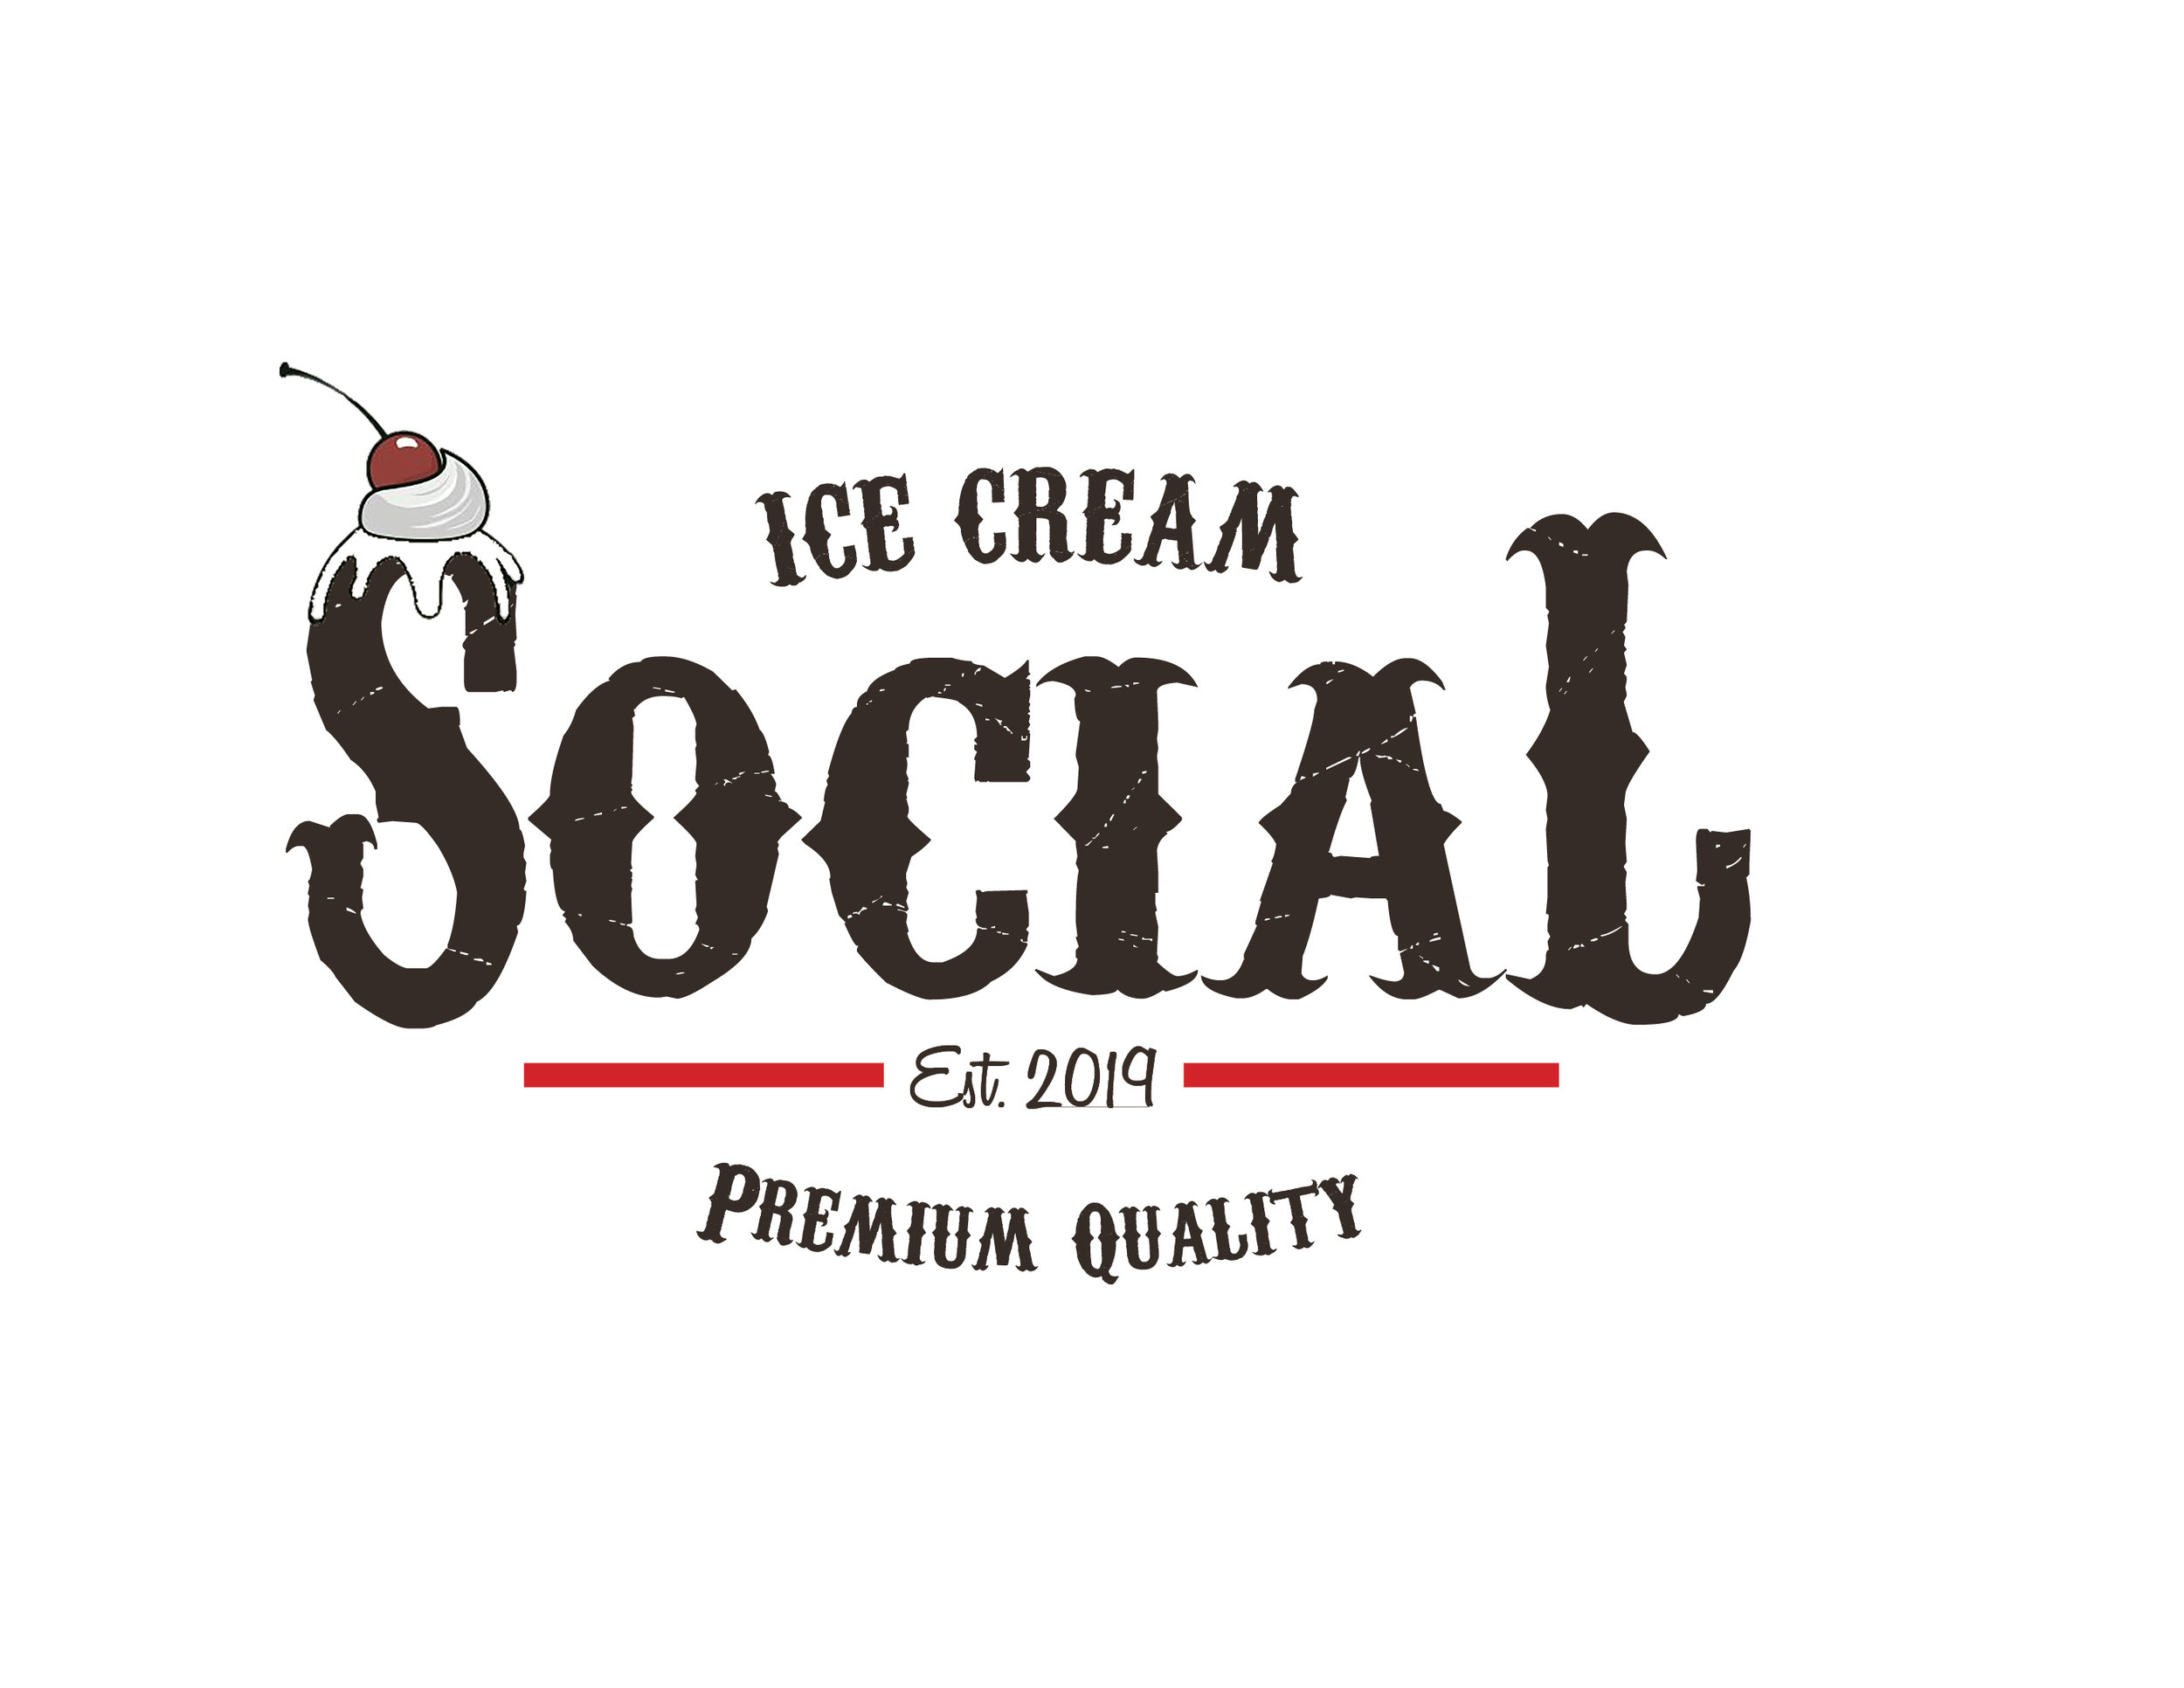 ice cream social logo for Journal.jpg